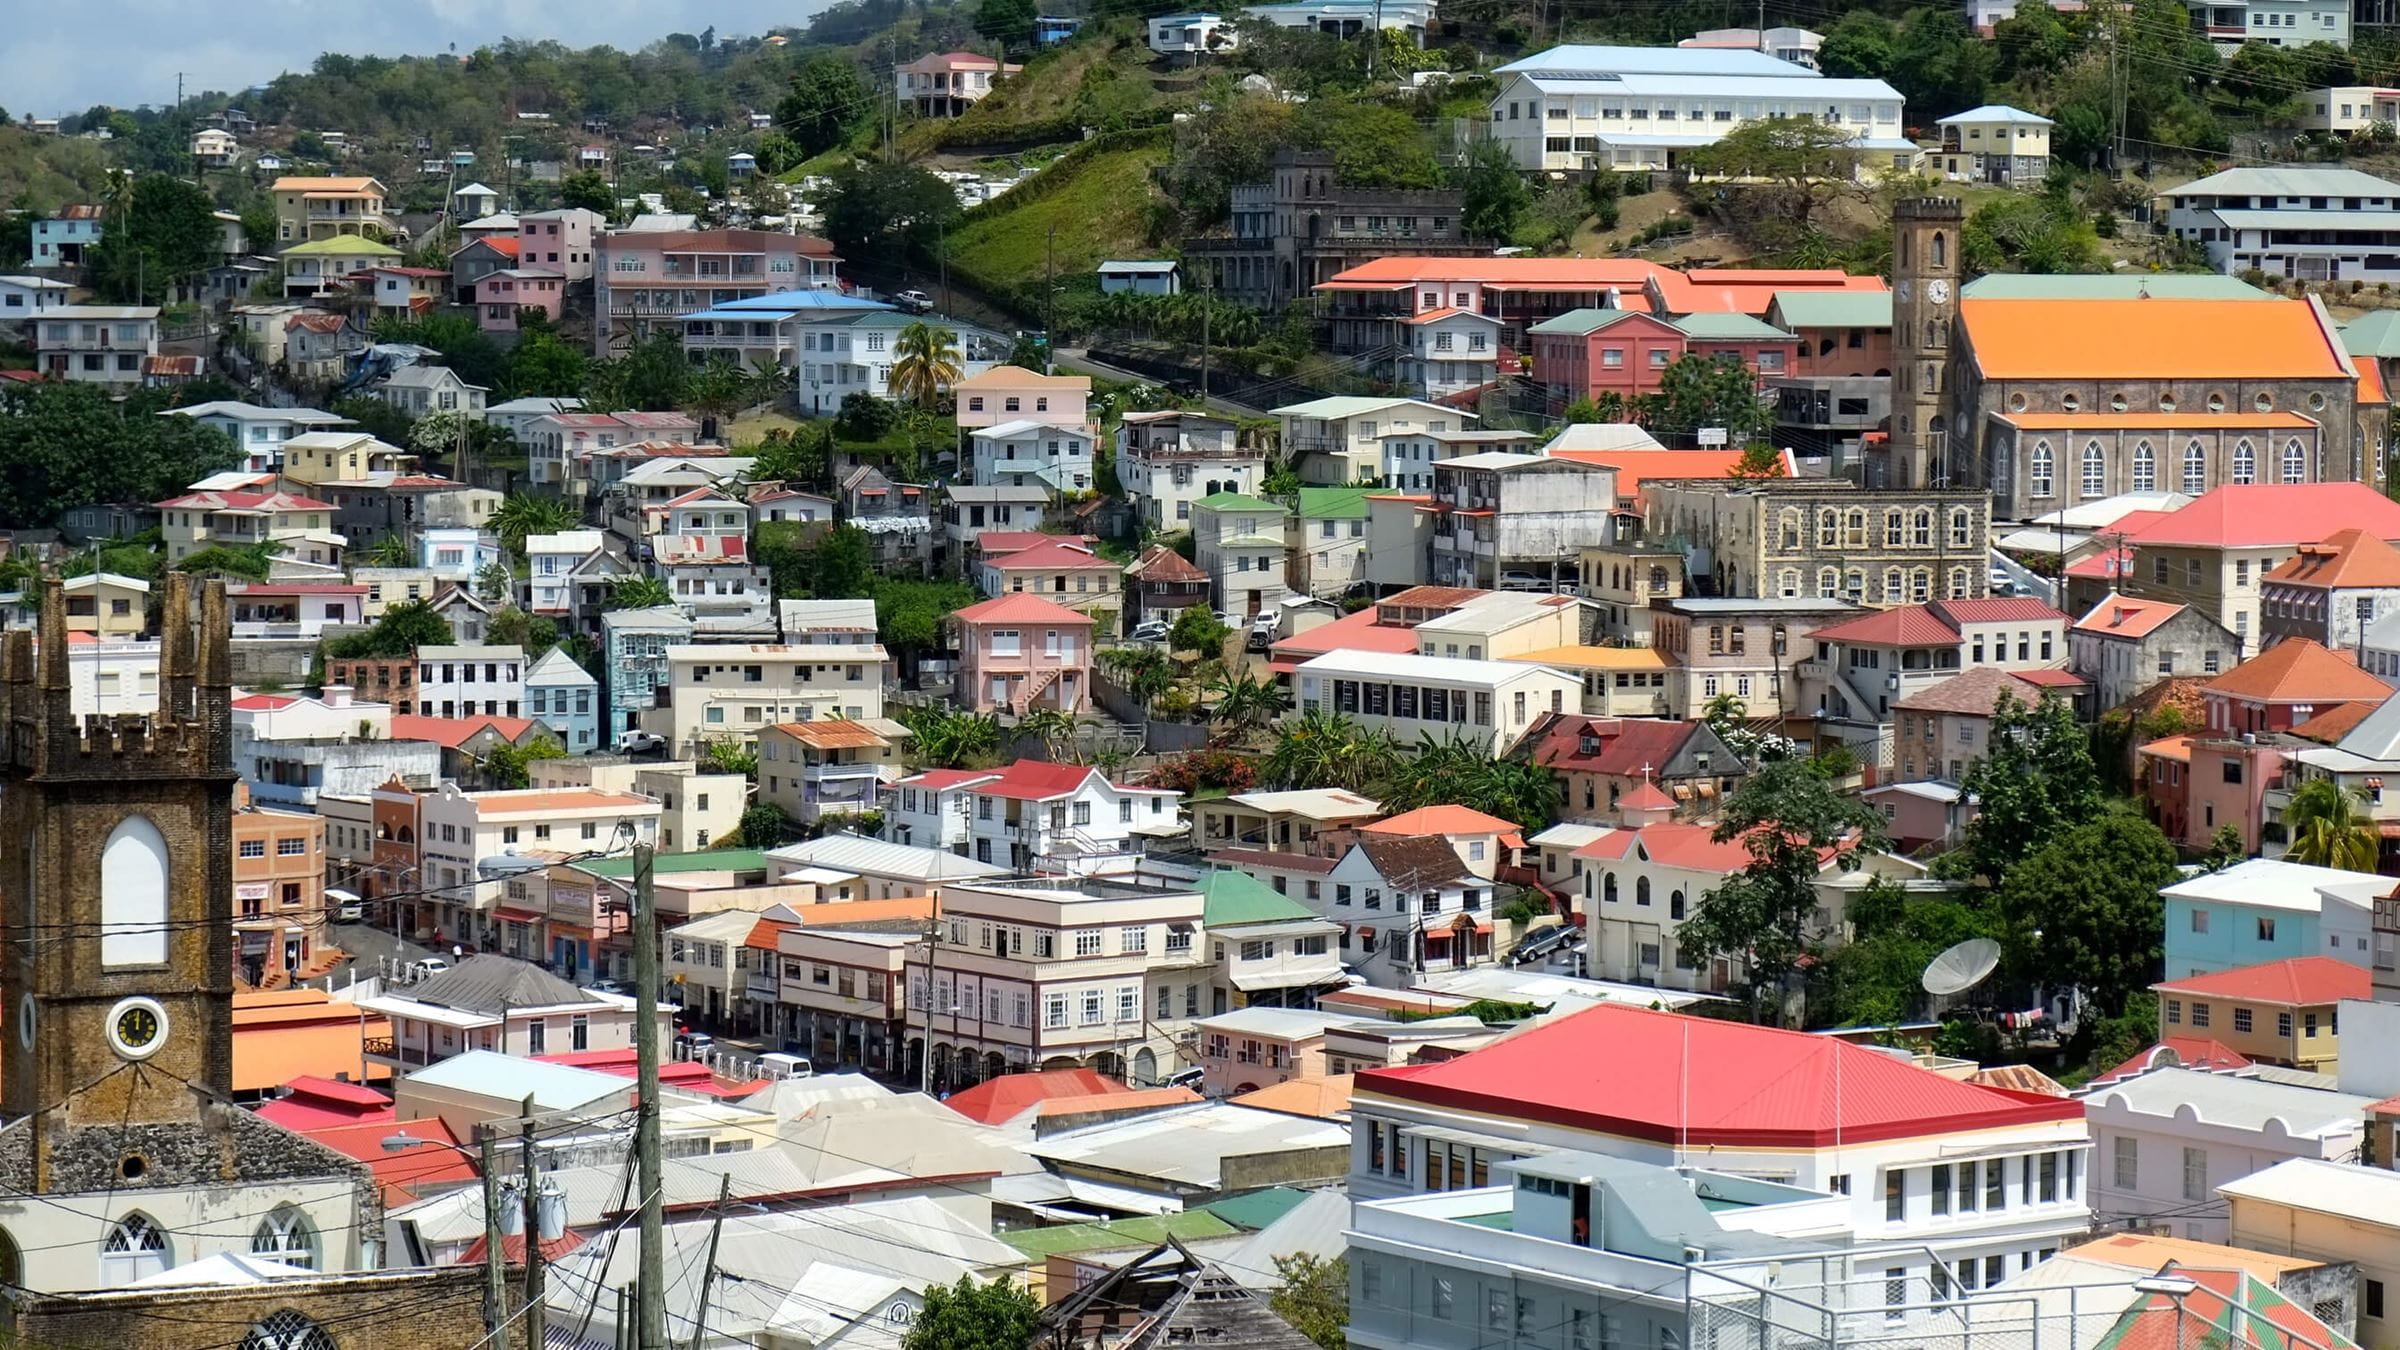 Island community of St Croix